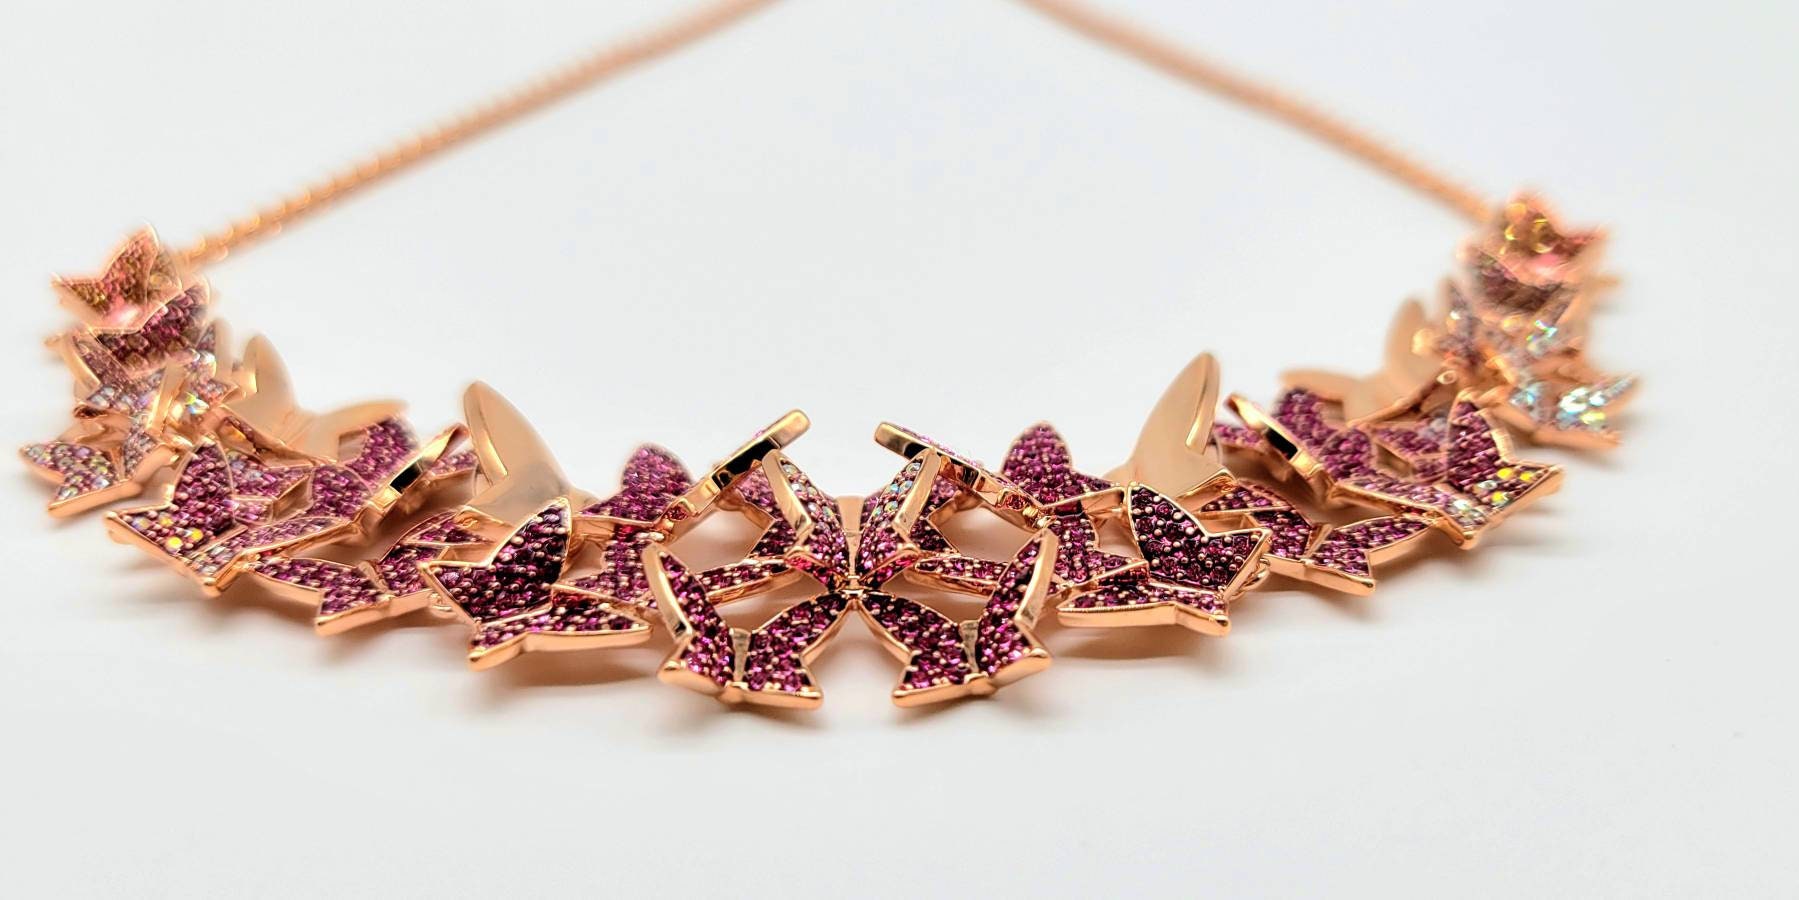 18K WGP Vintage Butterfly Necklace Made with Swarovski Crystal NP1957 | eBay